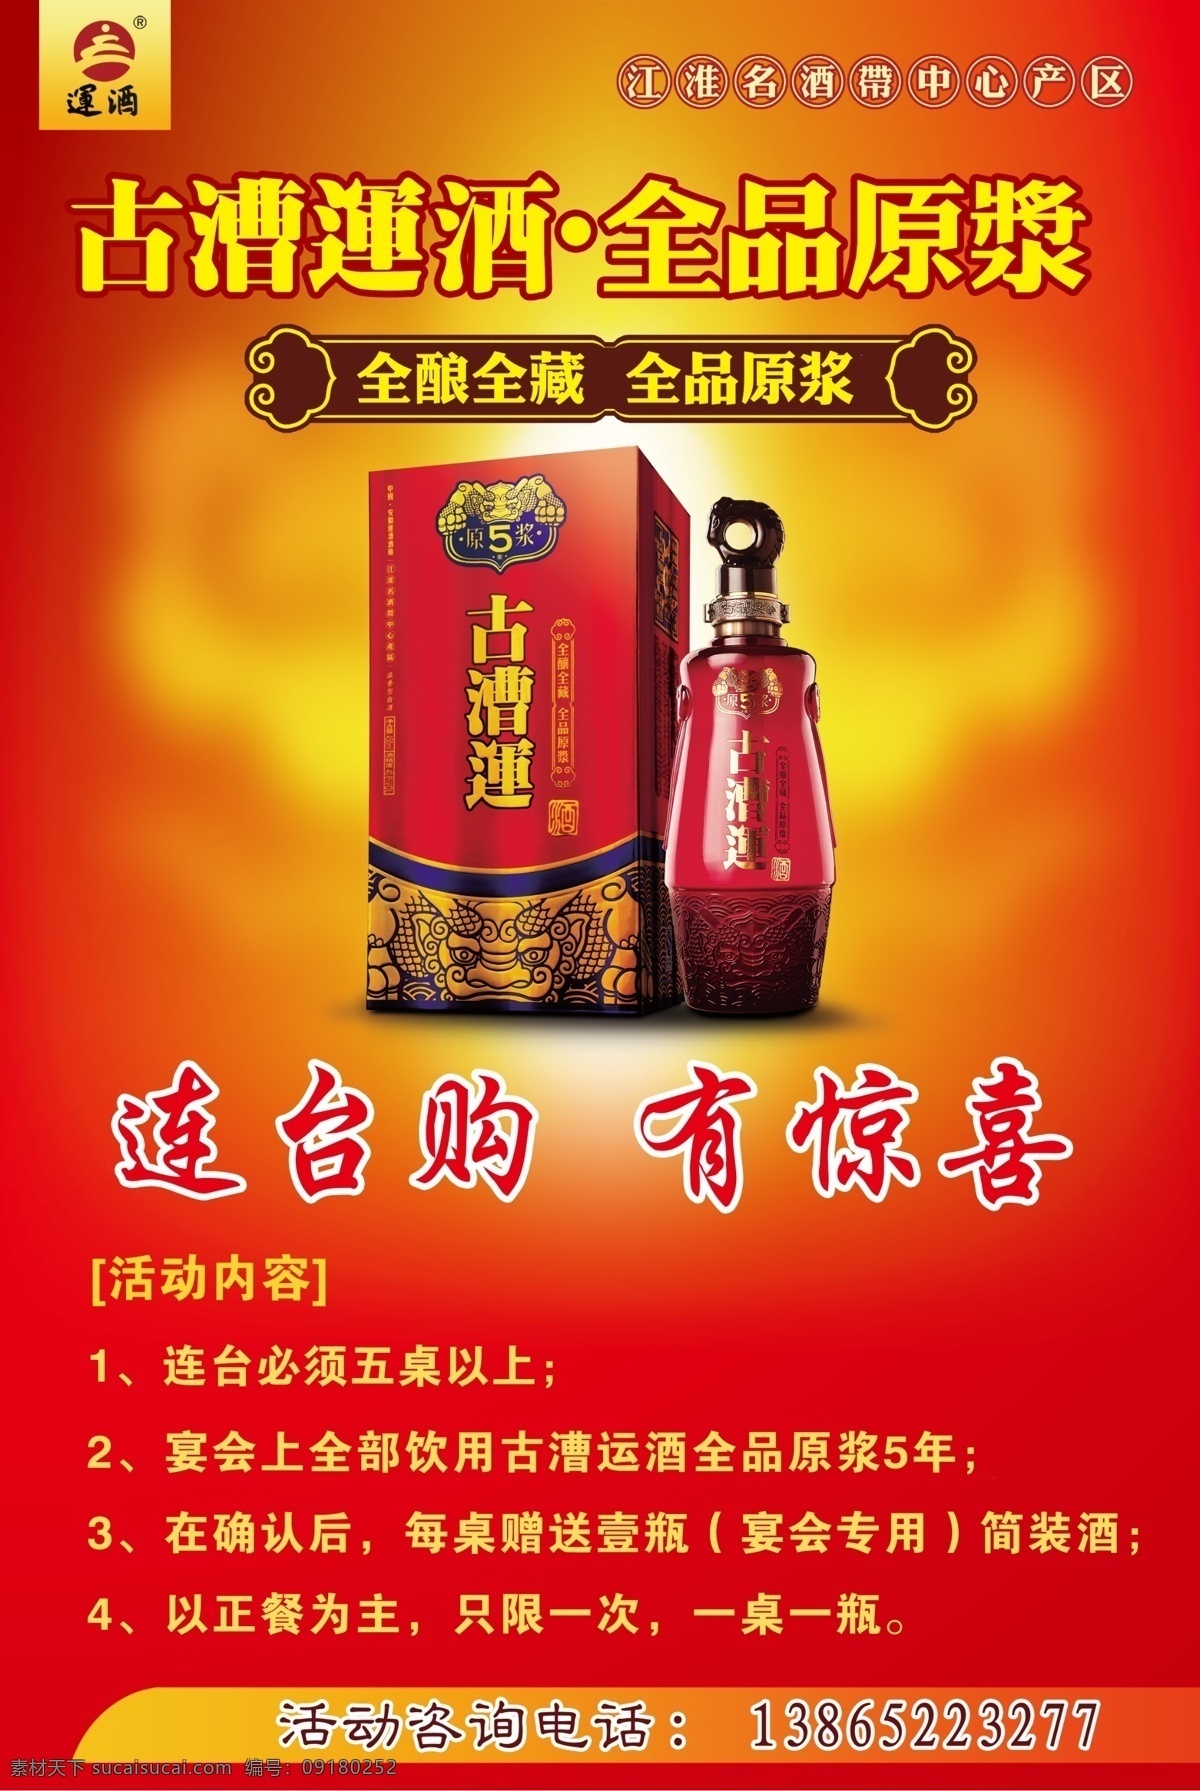 古漕运酒海报 背景素材 ps分层素材 酒类素材 酒盒 古漕酒瓶 广告设计模板 源文件